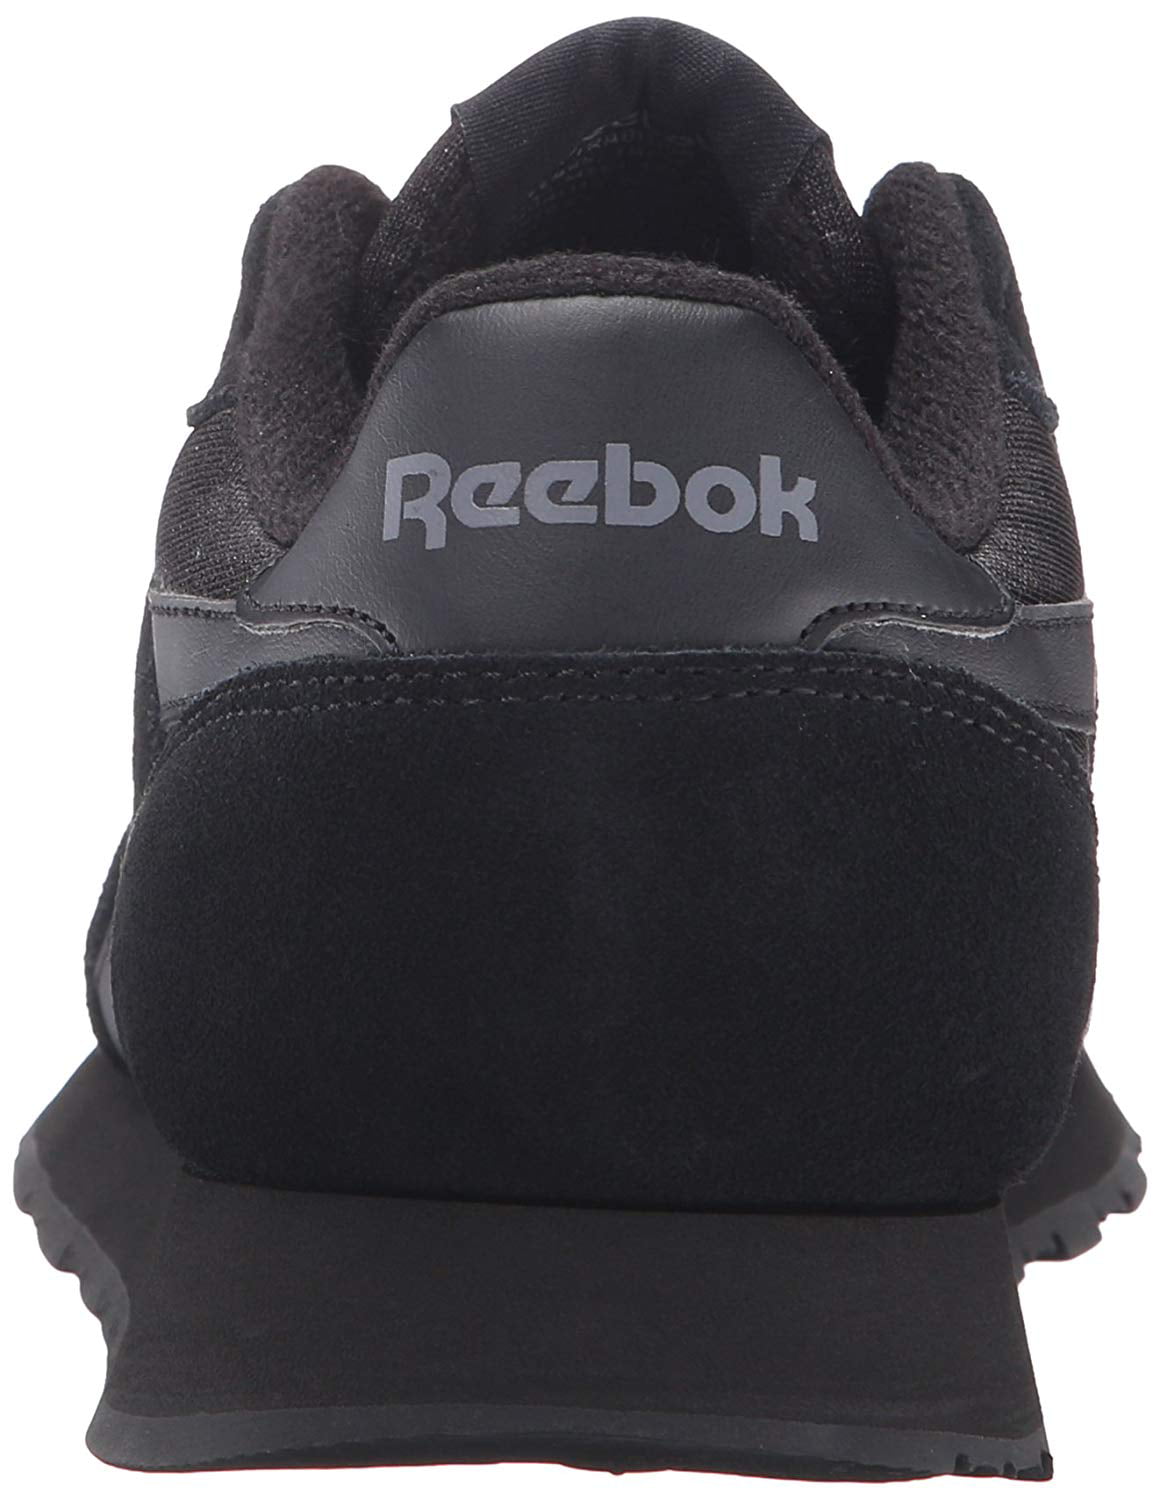 reebok men's royal nylon classic fashion sneaker